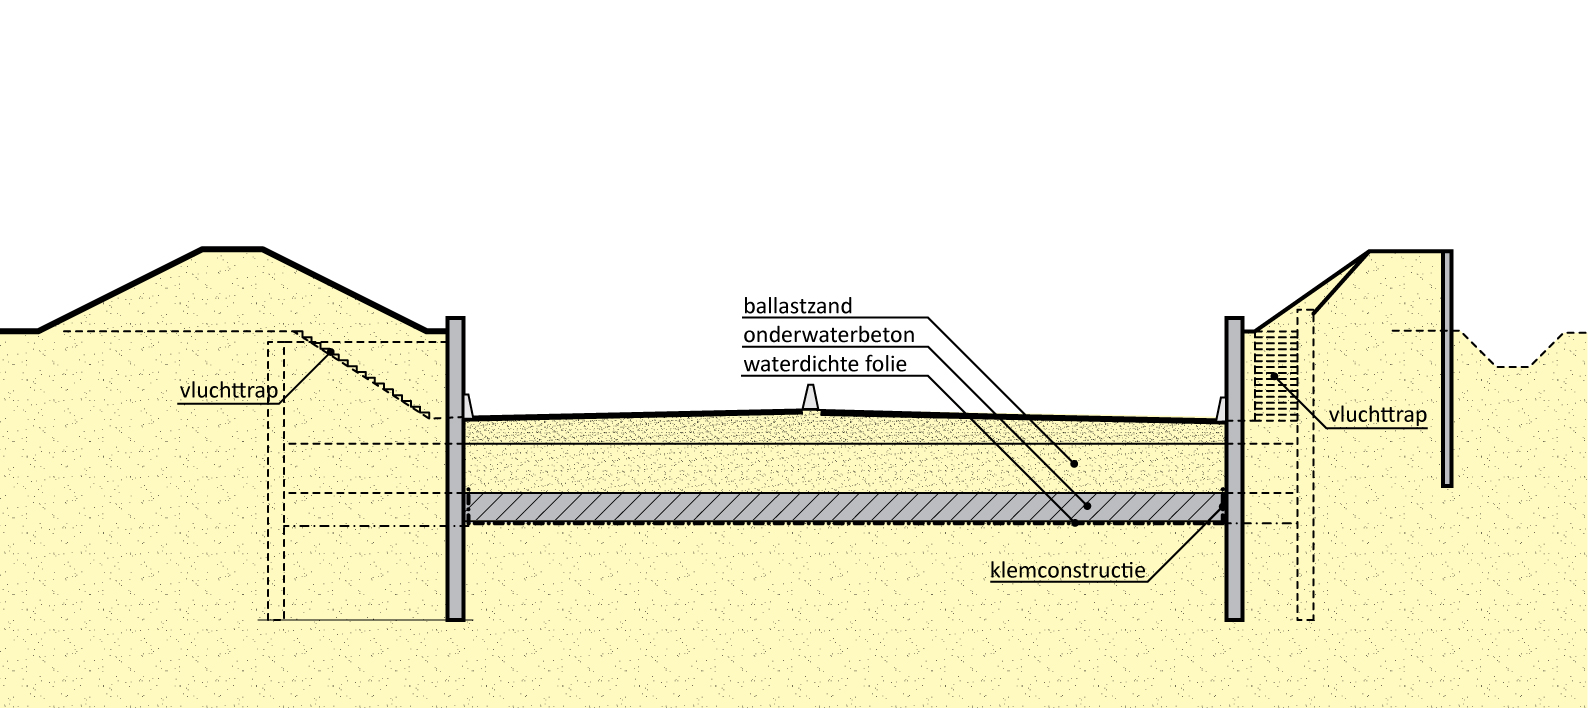 191.1 – Half verdiepte ligging in bouwkuip met folie en onderwaterbeton (via Wolsink)